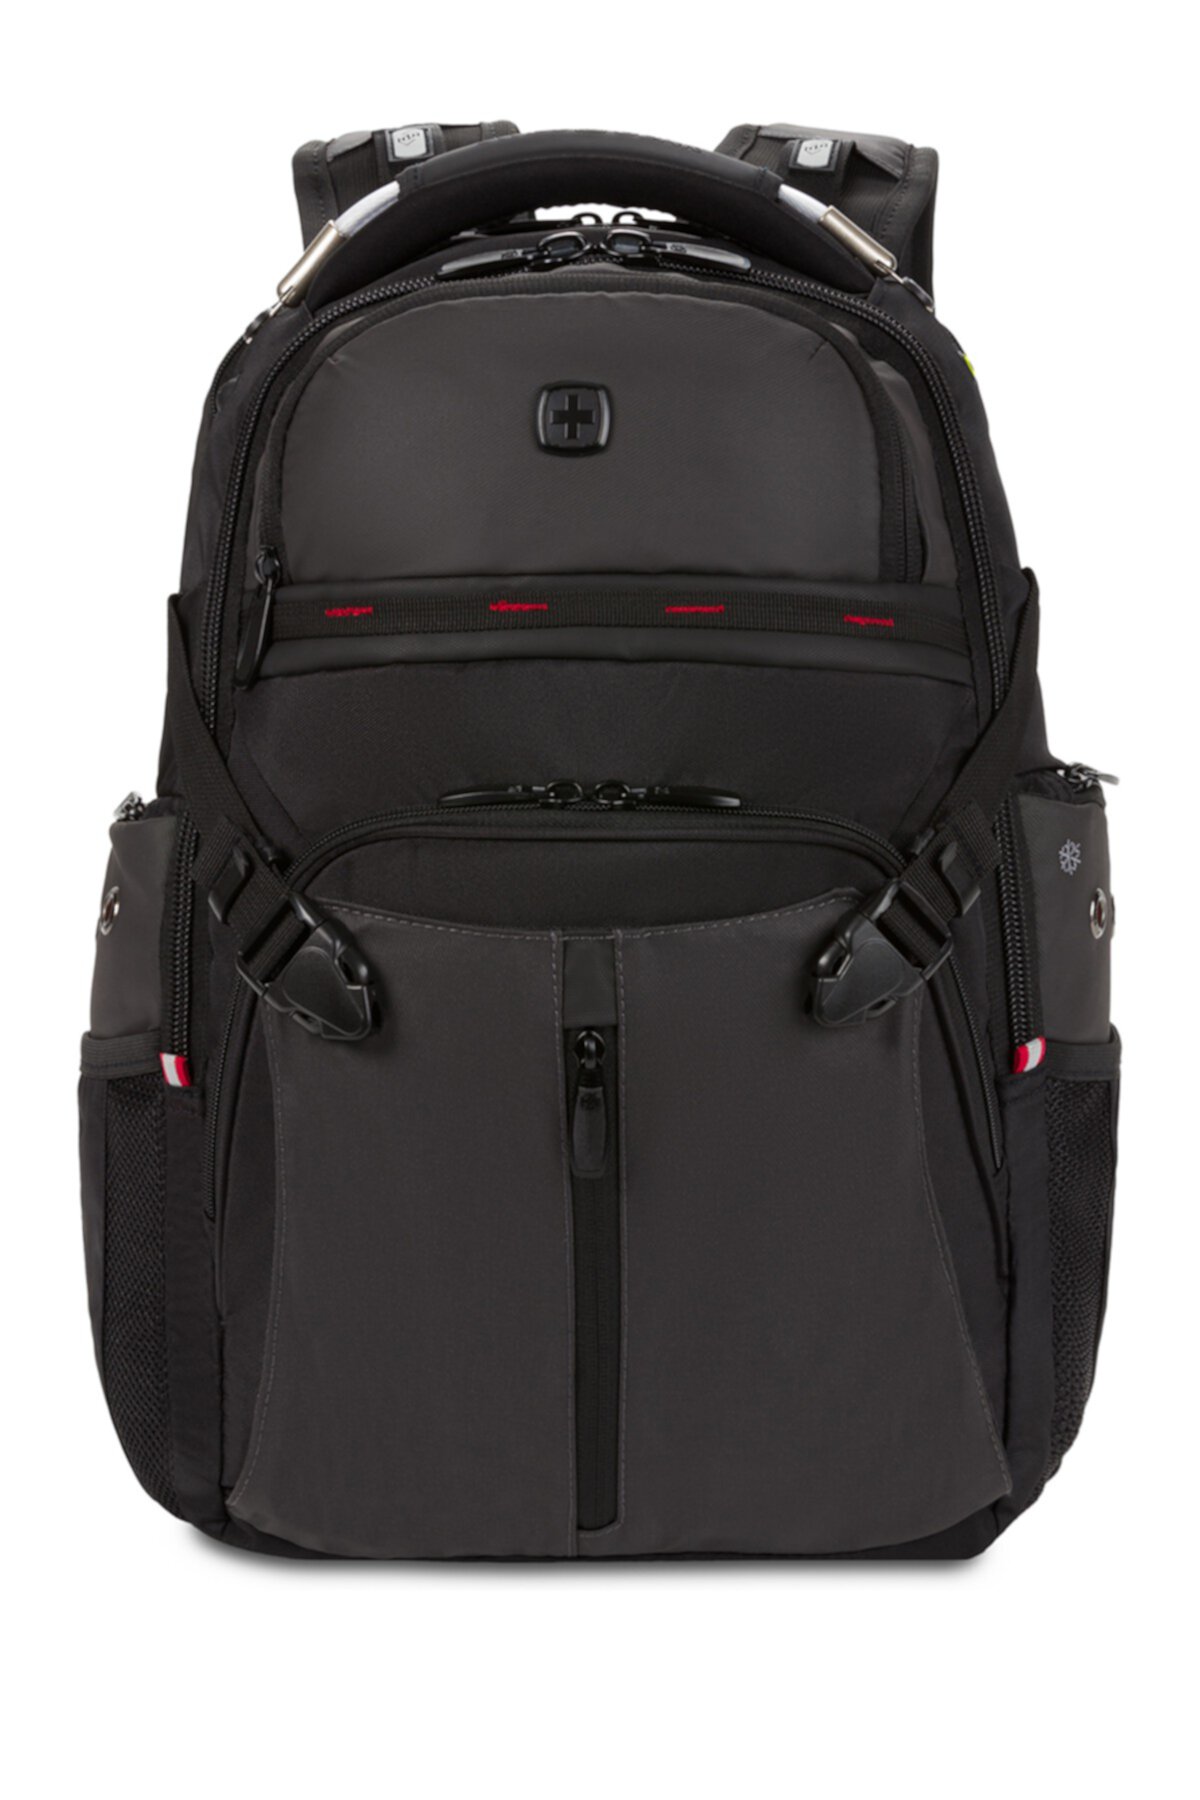 ScanSmart Laptop Backpack SwissGear